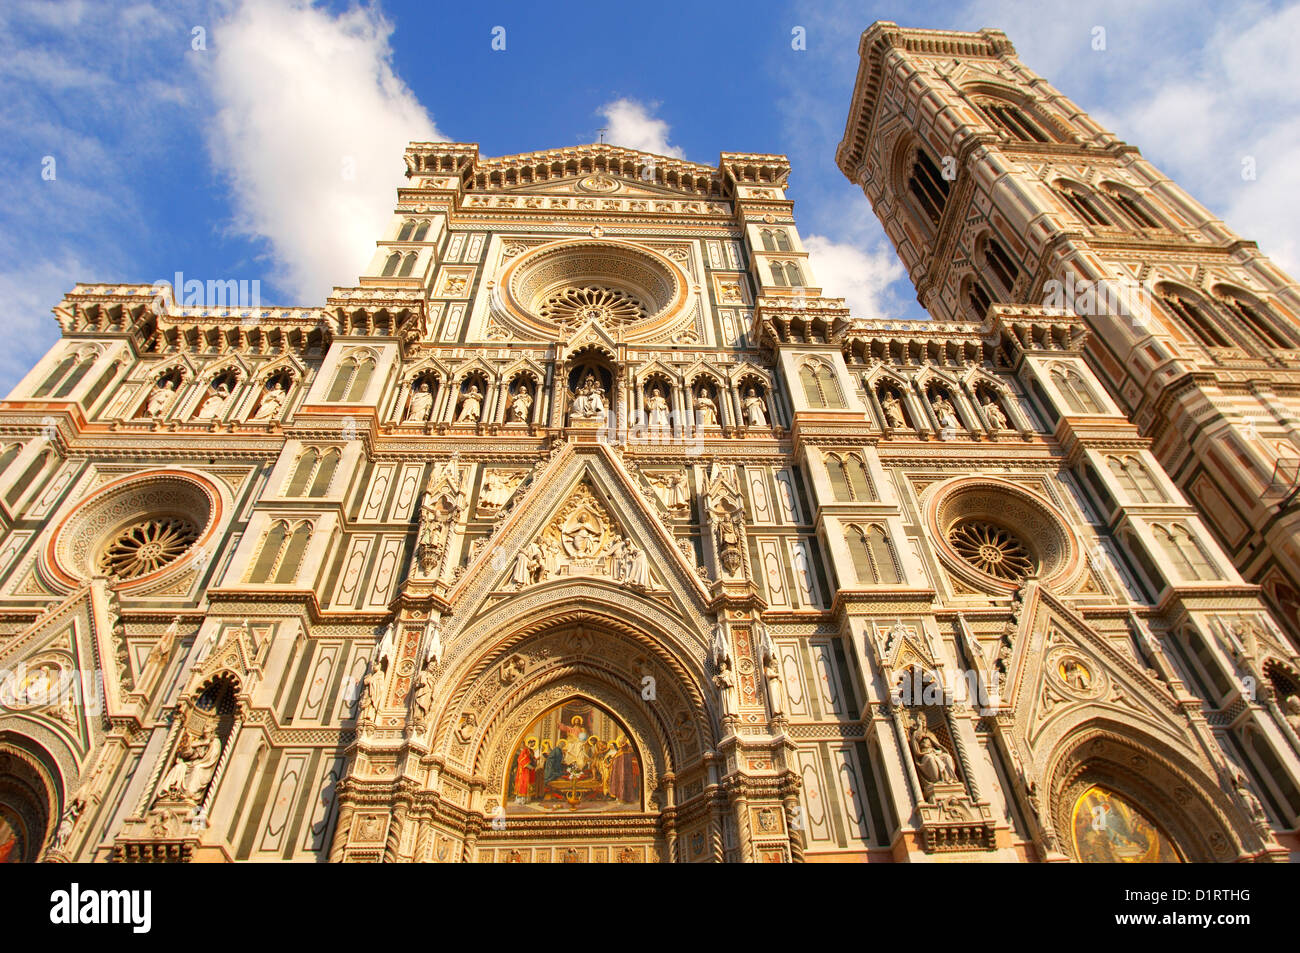 Der Dom - Detail der Fassade und der Glockenturm; Florenz Italien Stockfoto